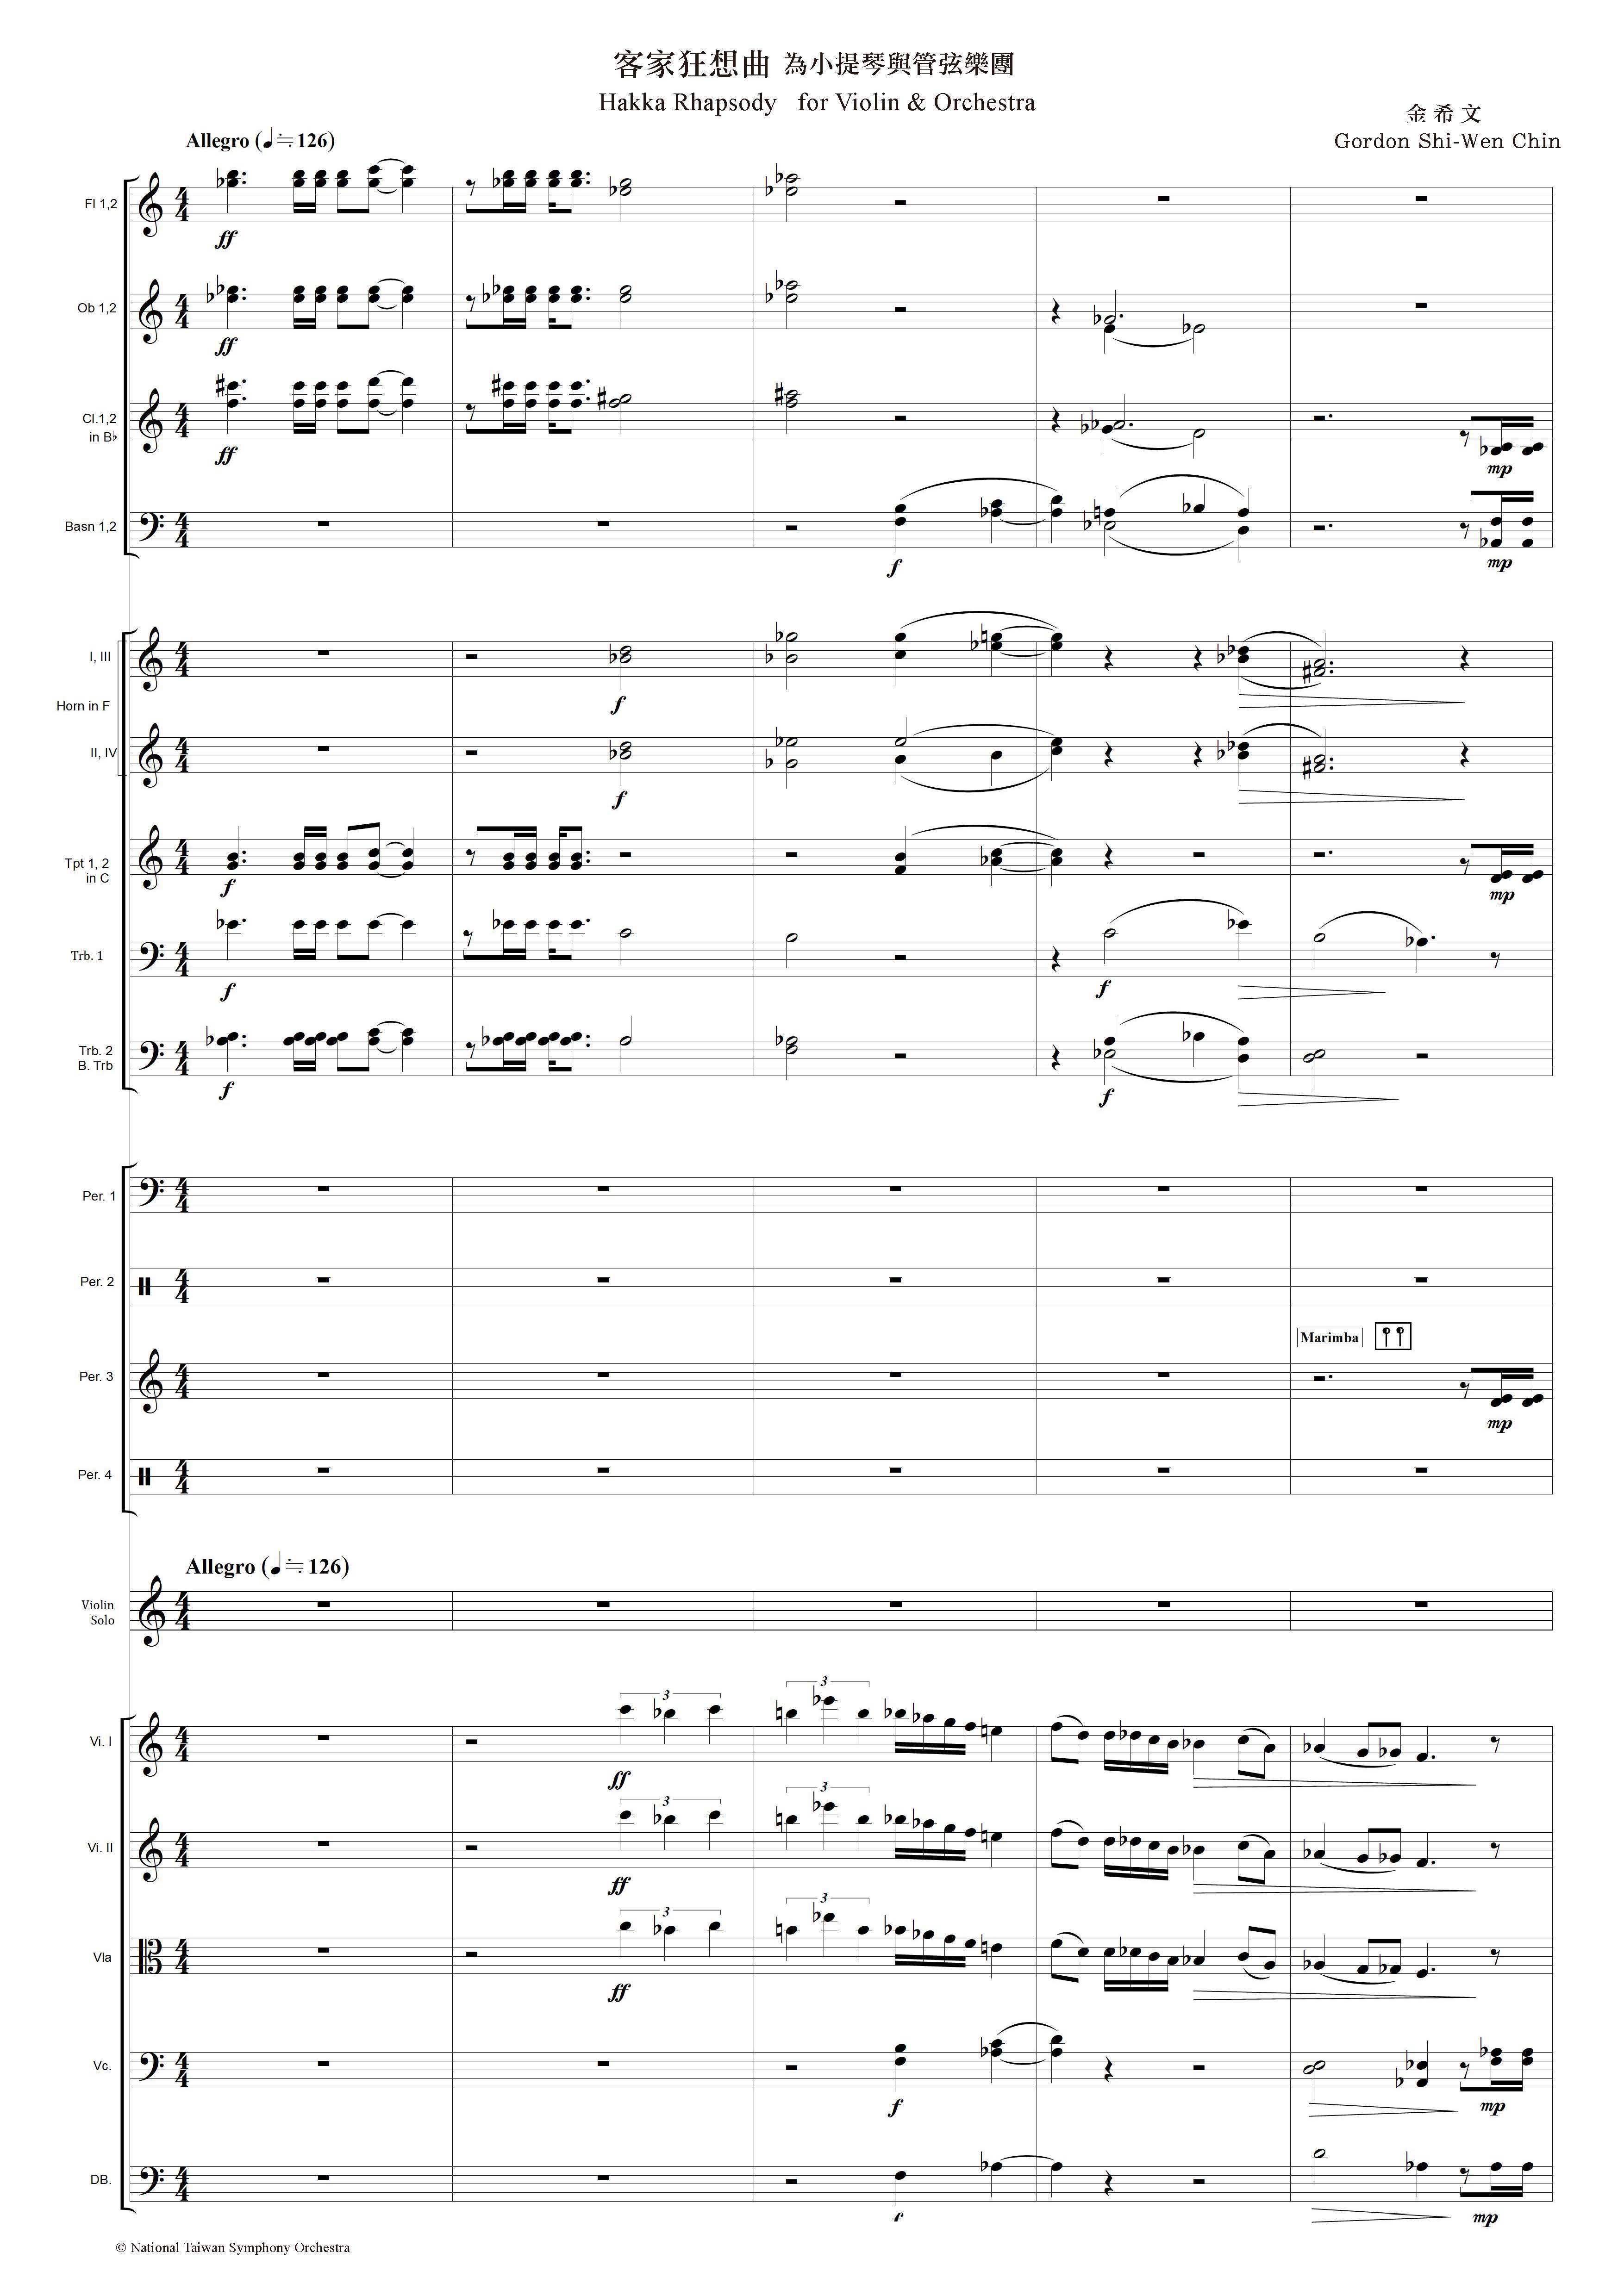 06_金希文_客家狂想曲為小提琴與管弦樂團_總譜_score cover.jpg